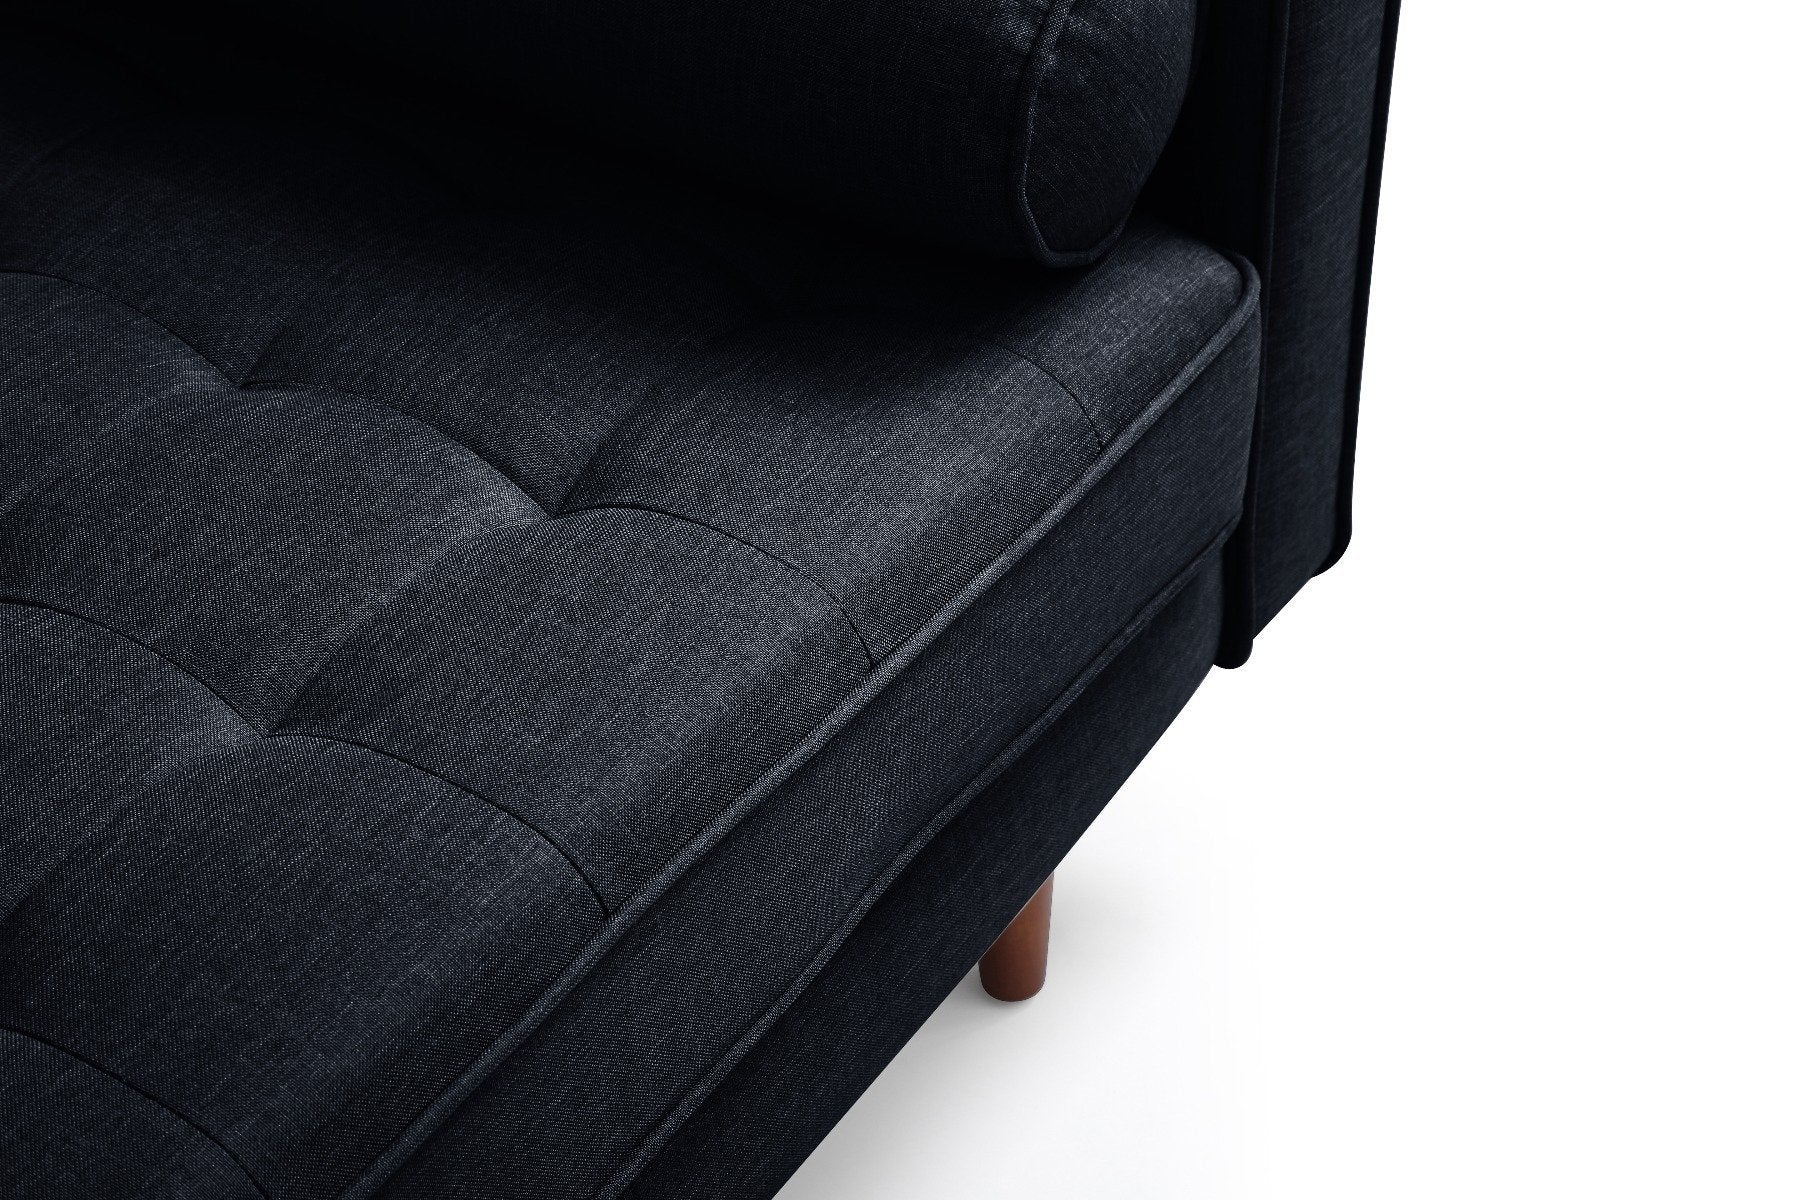 Furniture > Sofas - Sofa Marcella Black Velvet Fabric